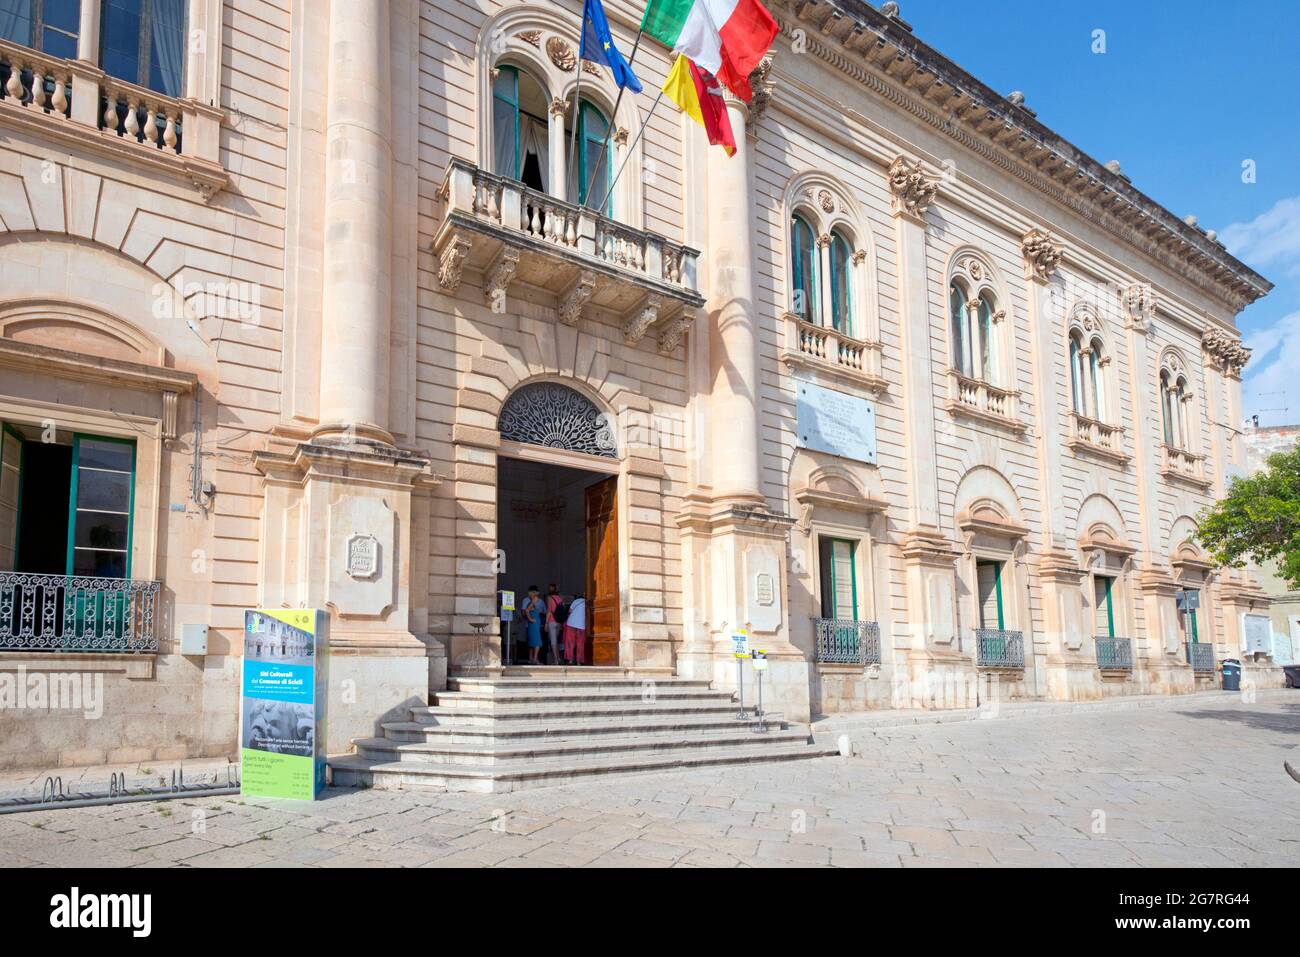 El ayuntamiento de la ciudad barroca de Scicli. Ragusa, Sicilia, Italia Foto de stock